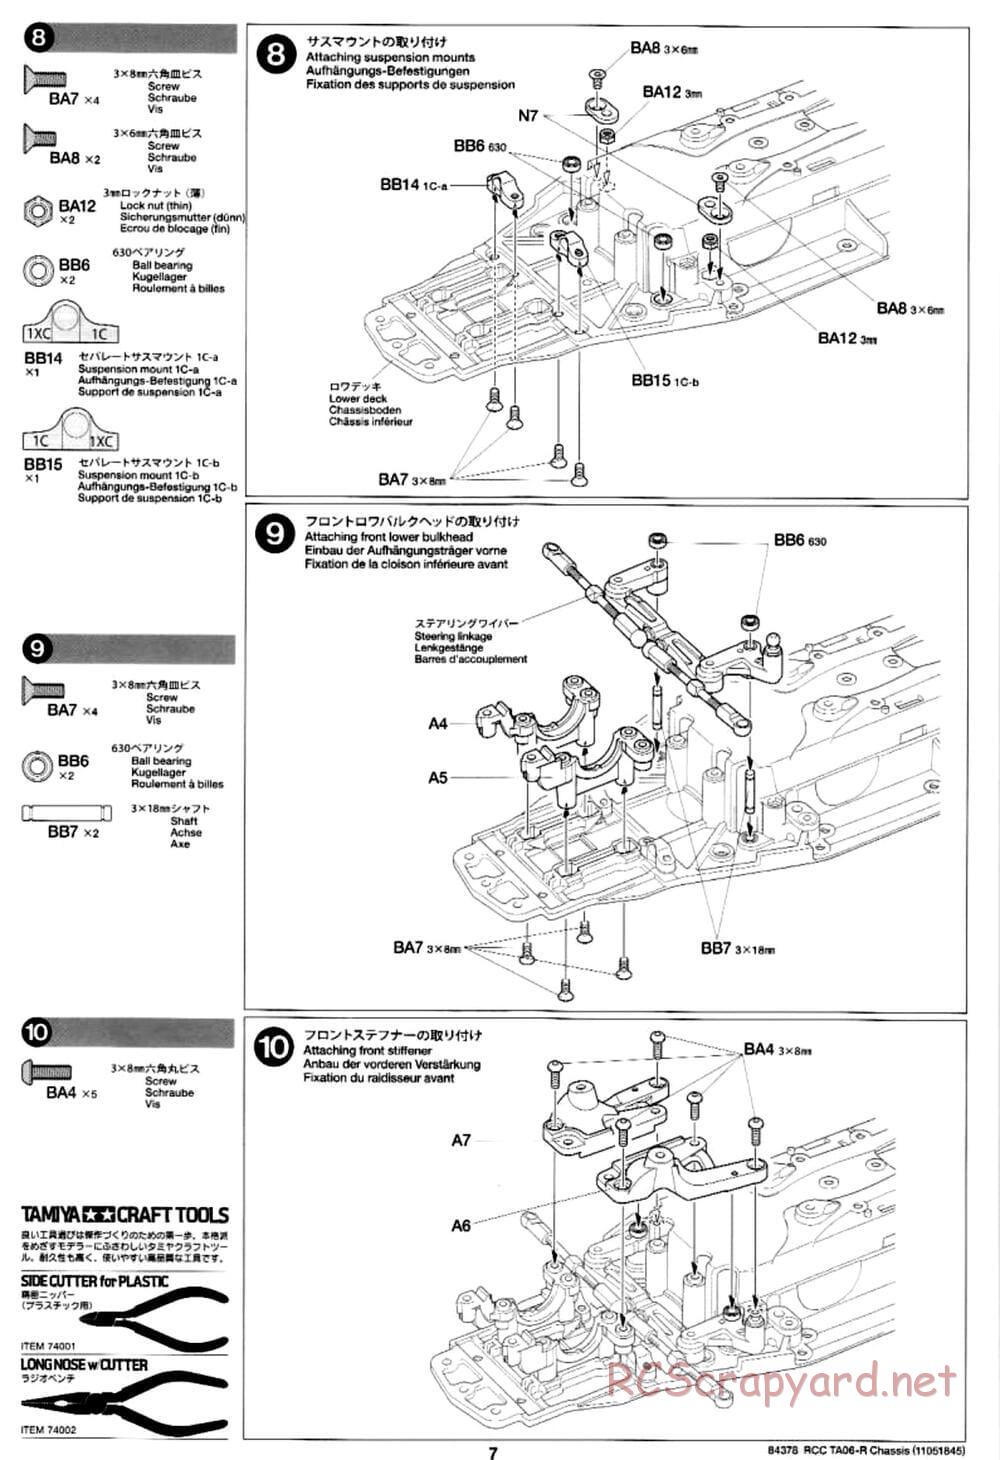 Tamiya - TA06-R Chassis - Manual - Page 7